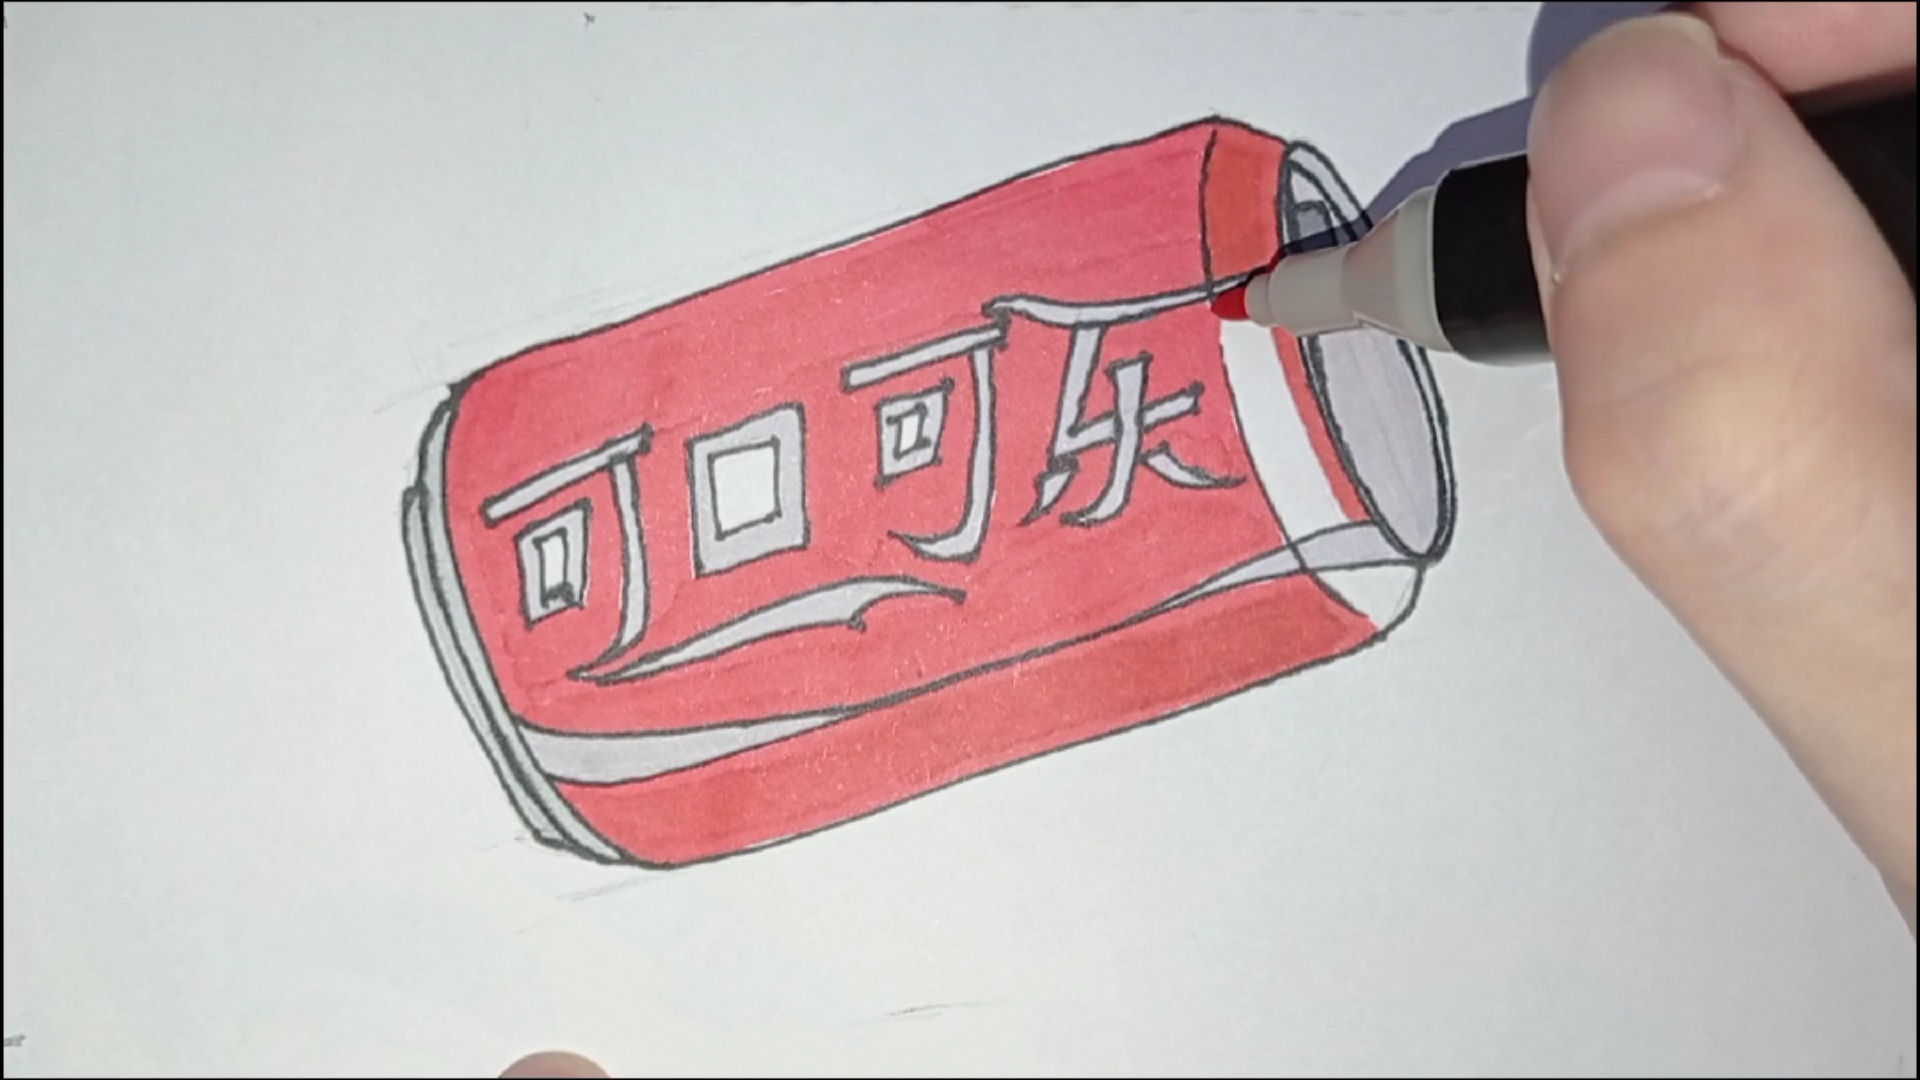 可口可乐瓶 简笔画图片